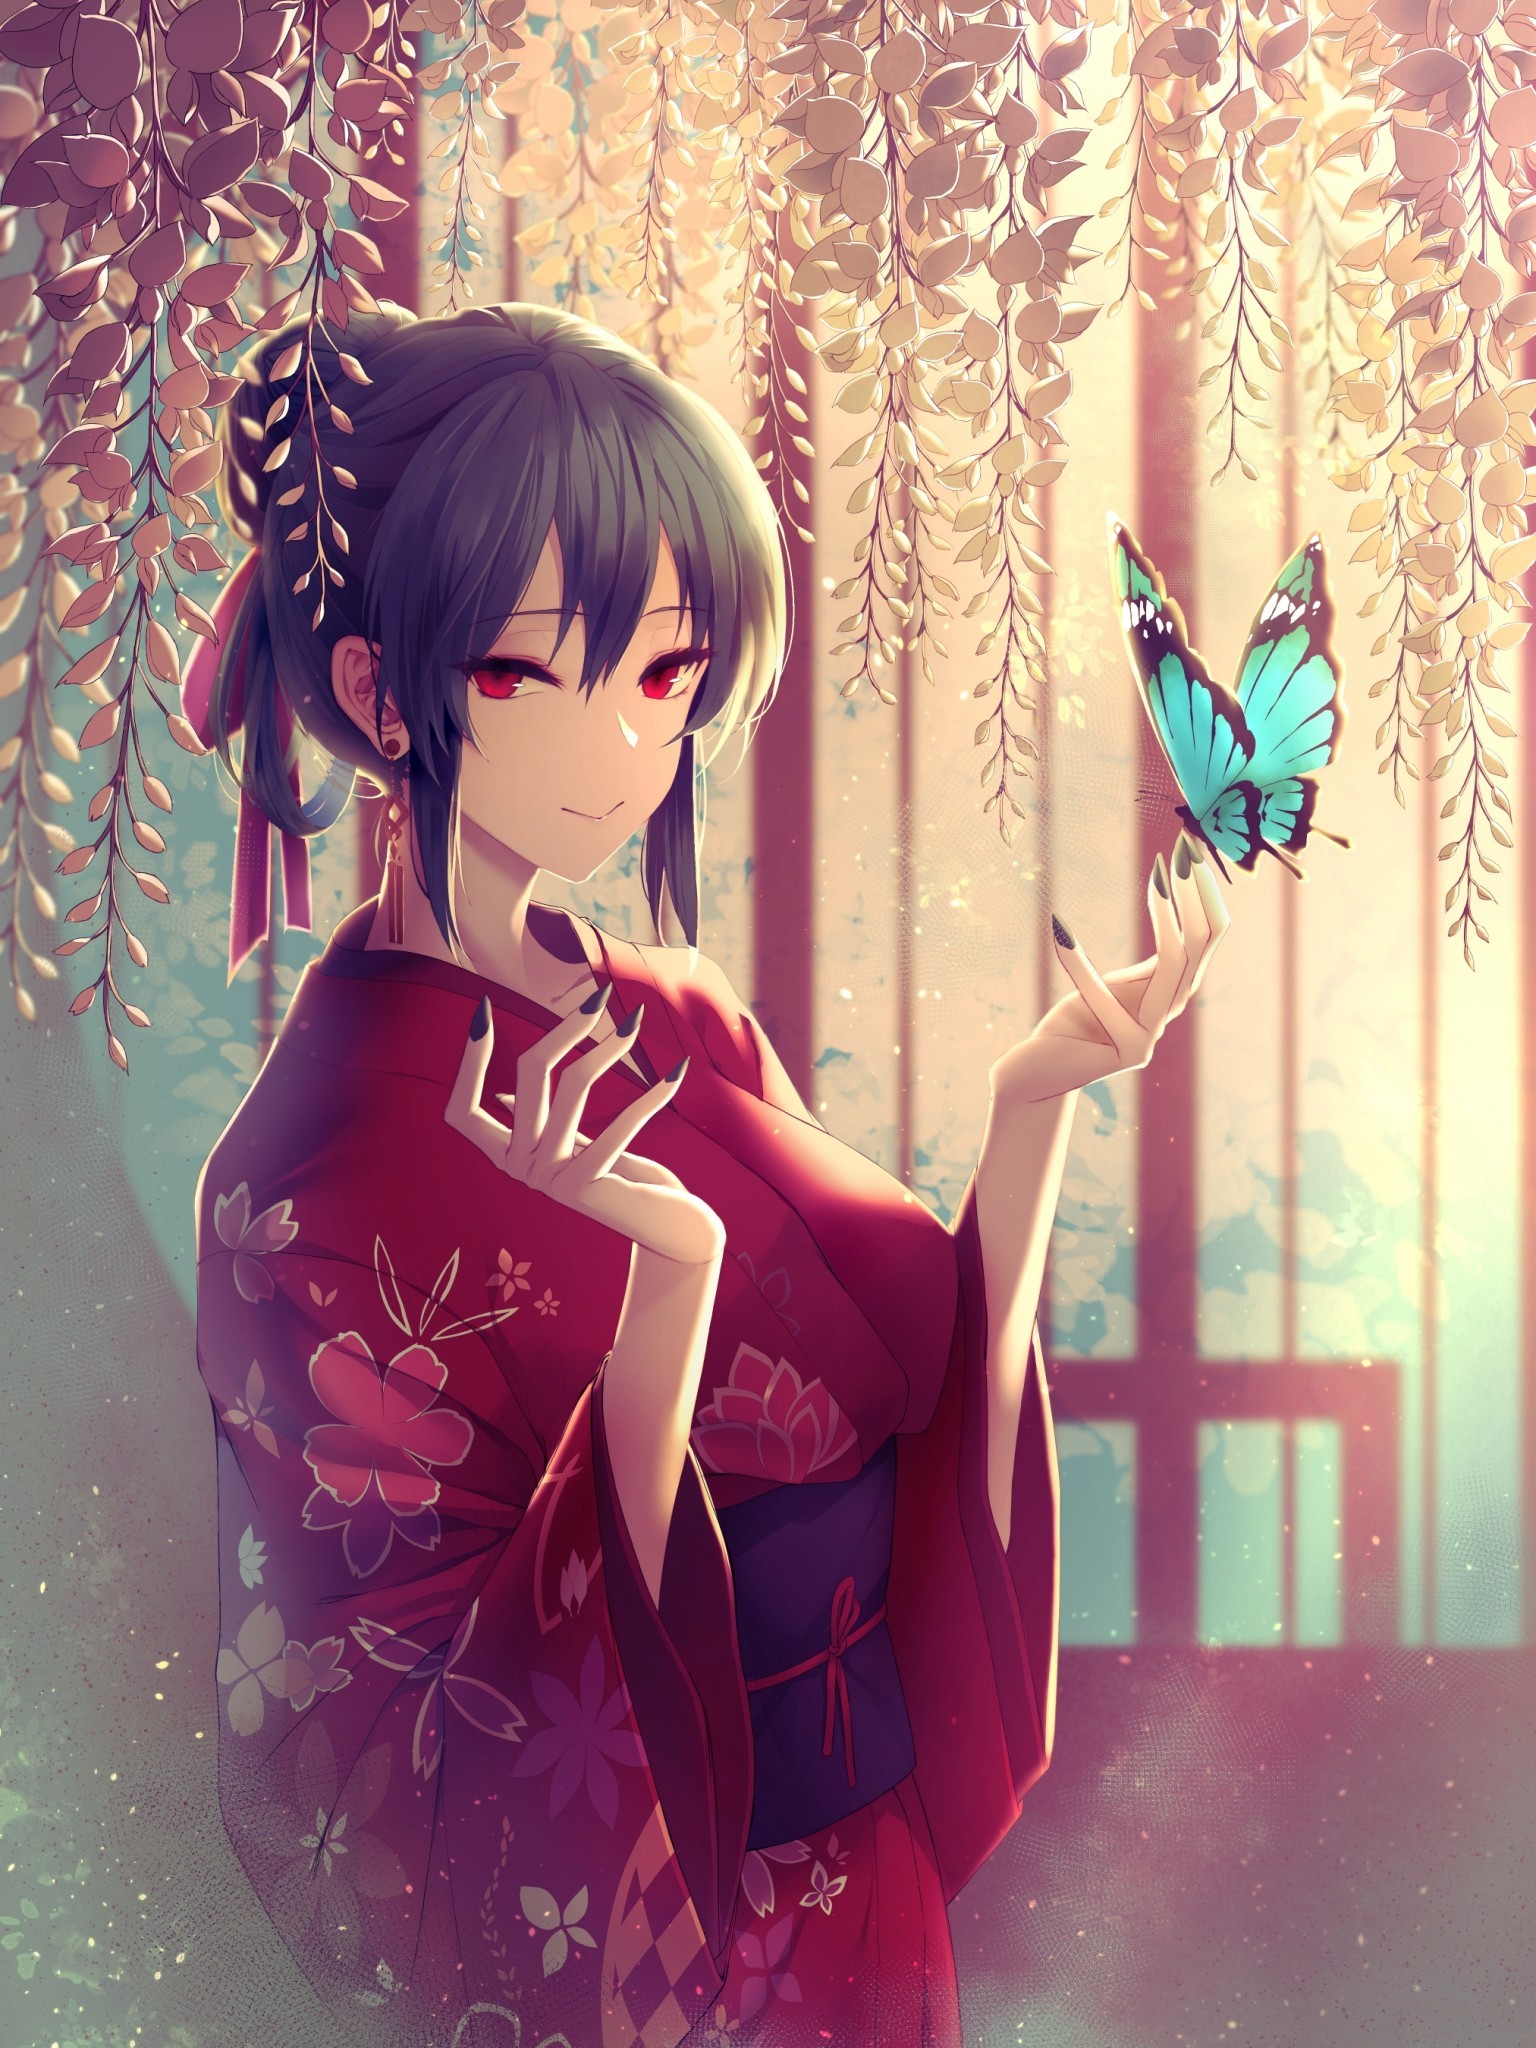 Anime Girl Kimono Blue Butterfly Short Hair Red Short Black Hair Blue Eyed Anime Girl 1536x48 Wallpaper Teahub Io